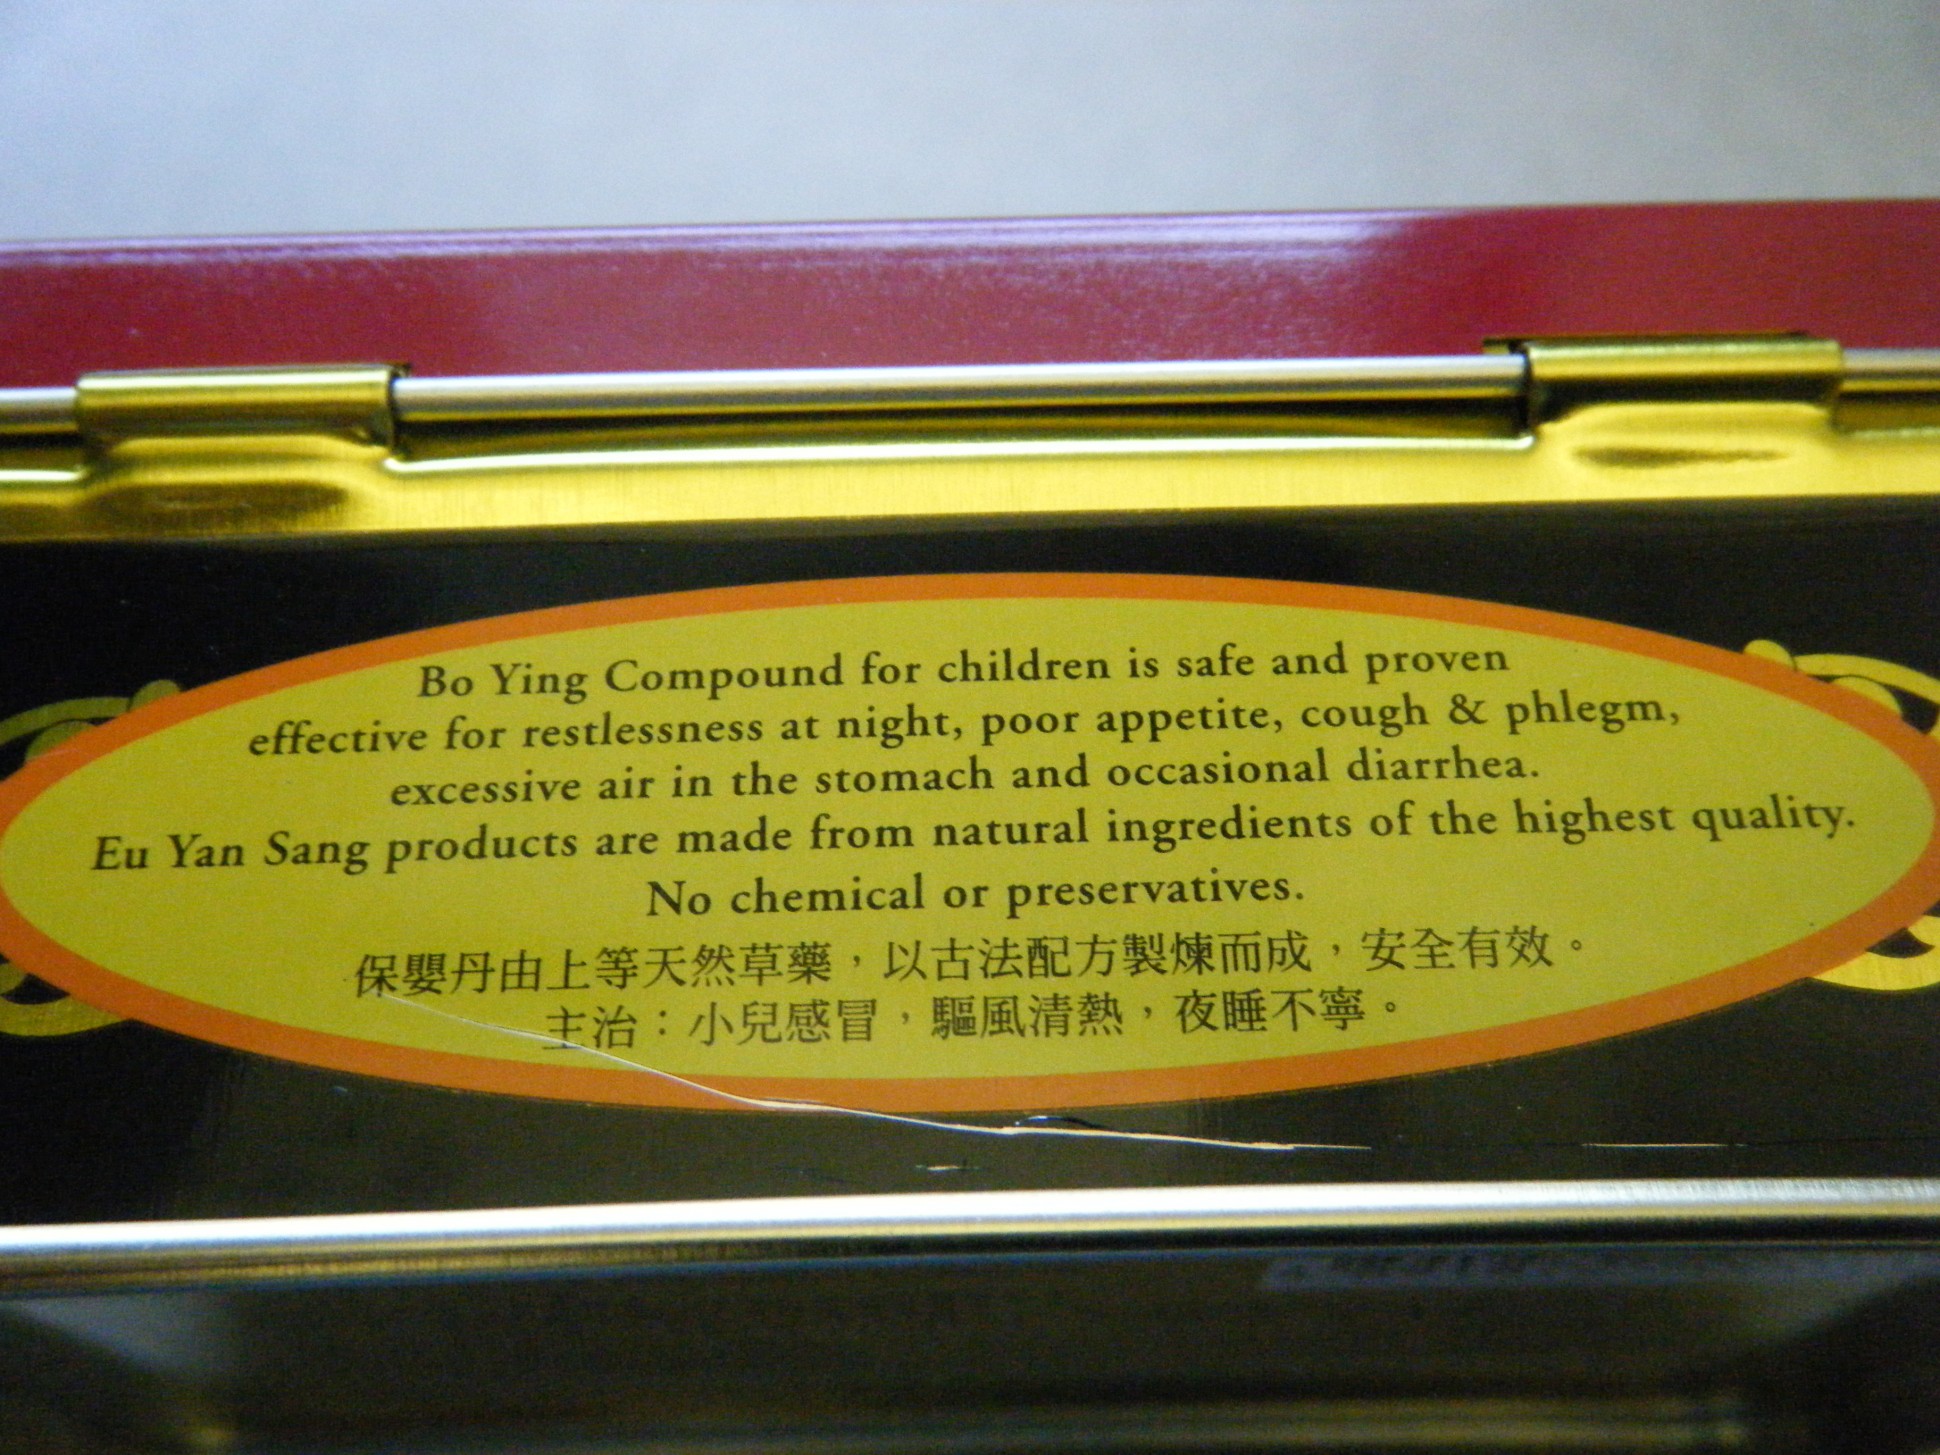 Thảo dược bị nghi nhiễm chì gắn nhãn mác cả tiếng Anh lẫn tiếng Trung Quốc